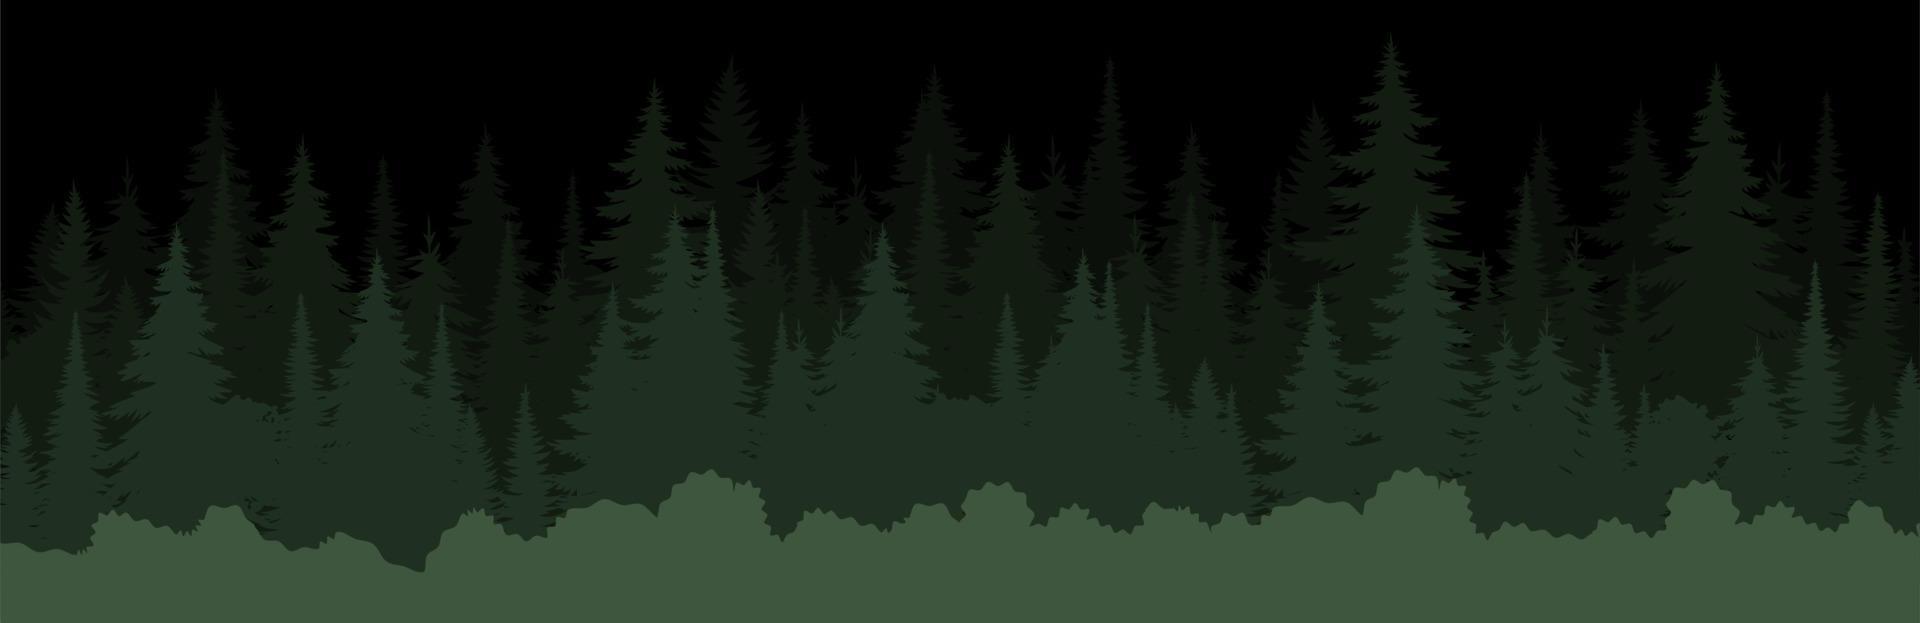 vetor montanhas floresta textura de fundo, silhueta de floresta de coníferas, vetor. árvores noturnas, abetos, abetos. paisagem horizontal em camadas.